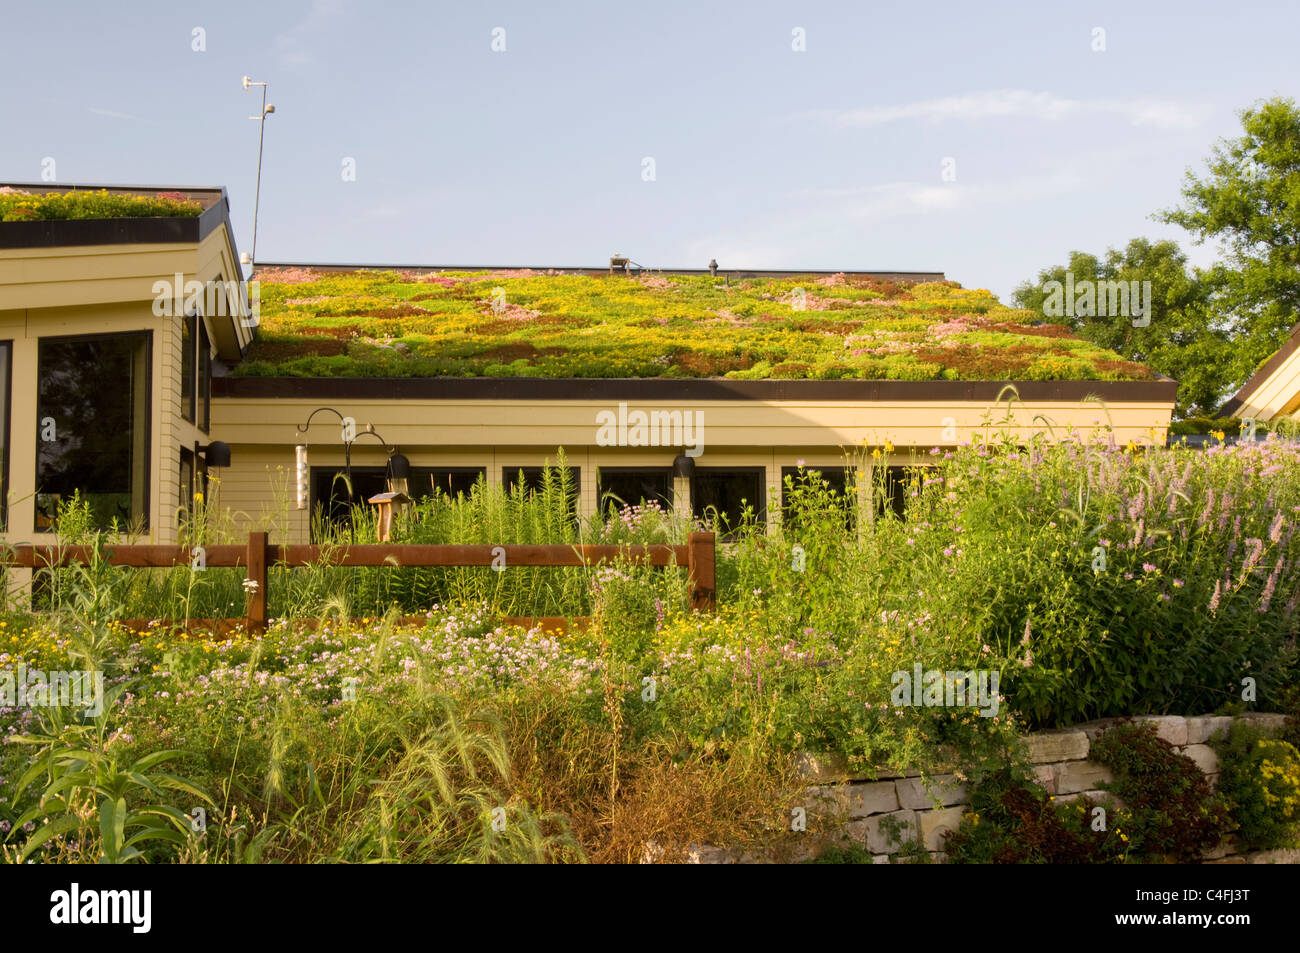 Libanon-Hügel-Besucherzentrum in Eagan Minnesota, die Vegetation auf Dachbegrünung und einheimische Pflanze Gärten im Vordergrund Stockfoto